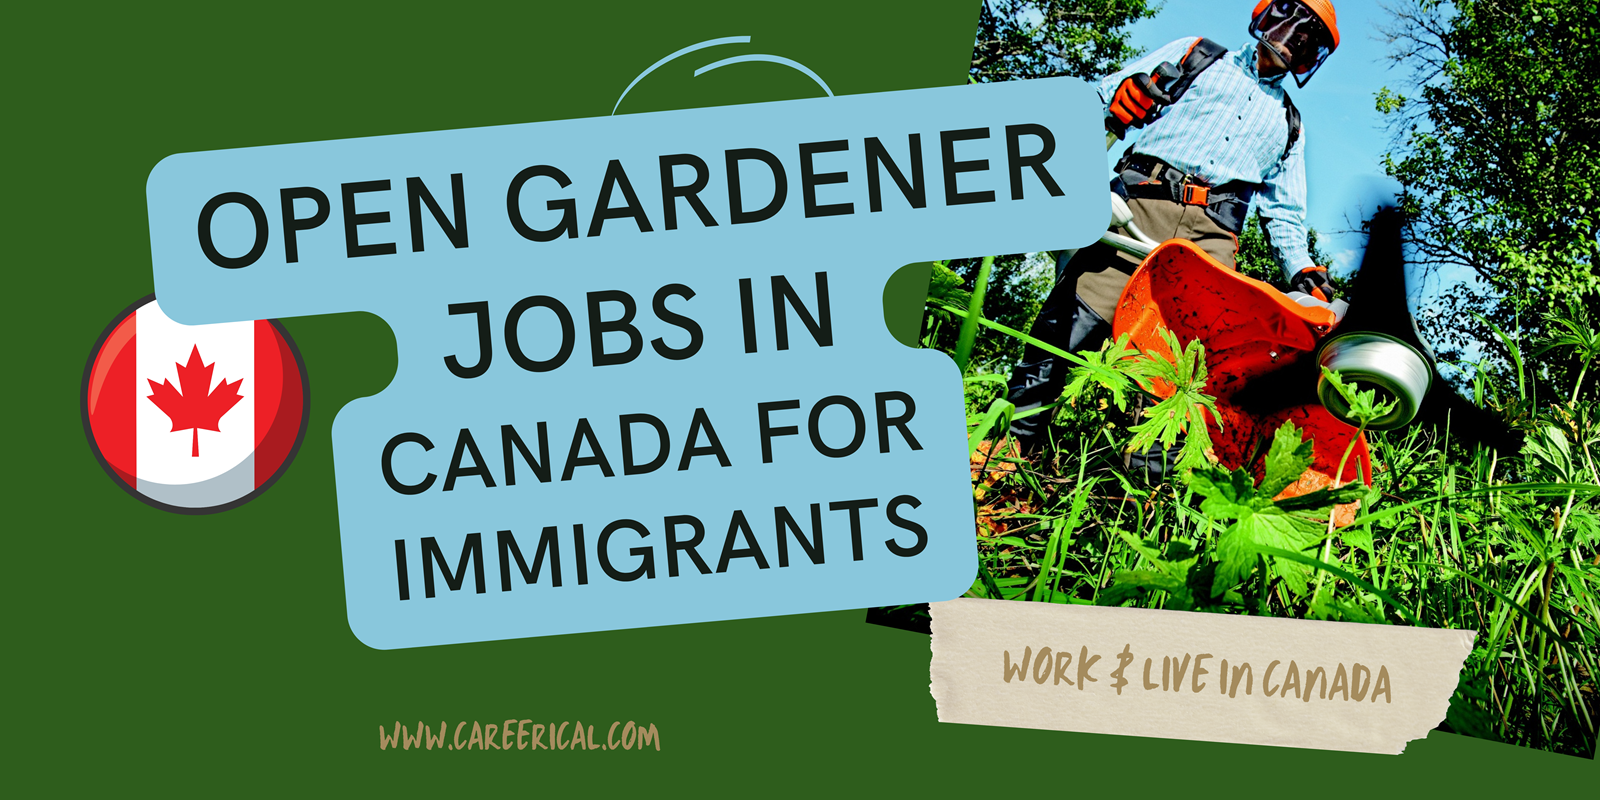 Open Gardener Jobs in Canada for Immigrants